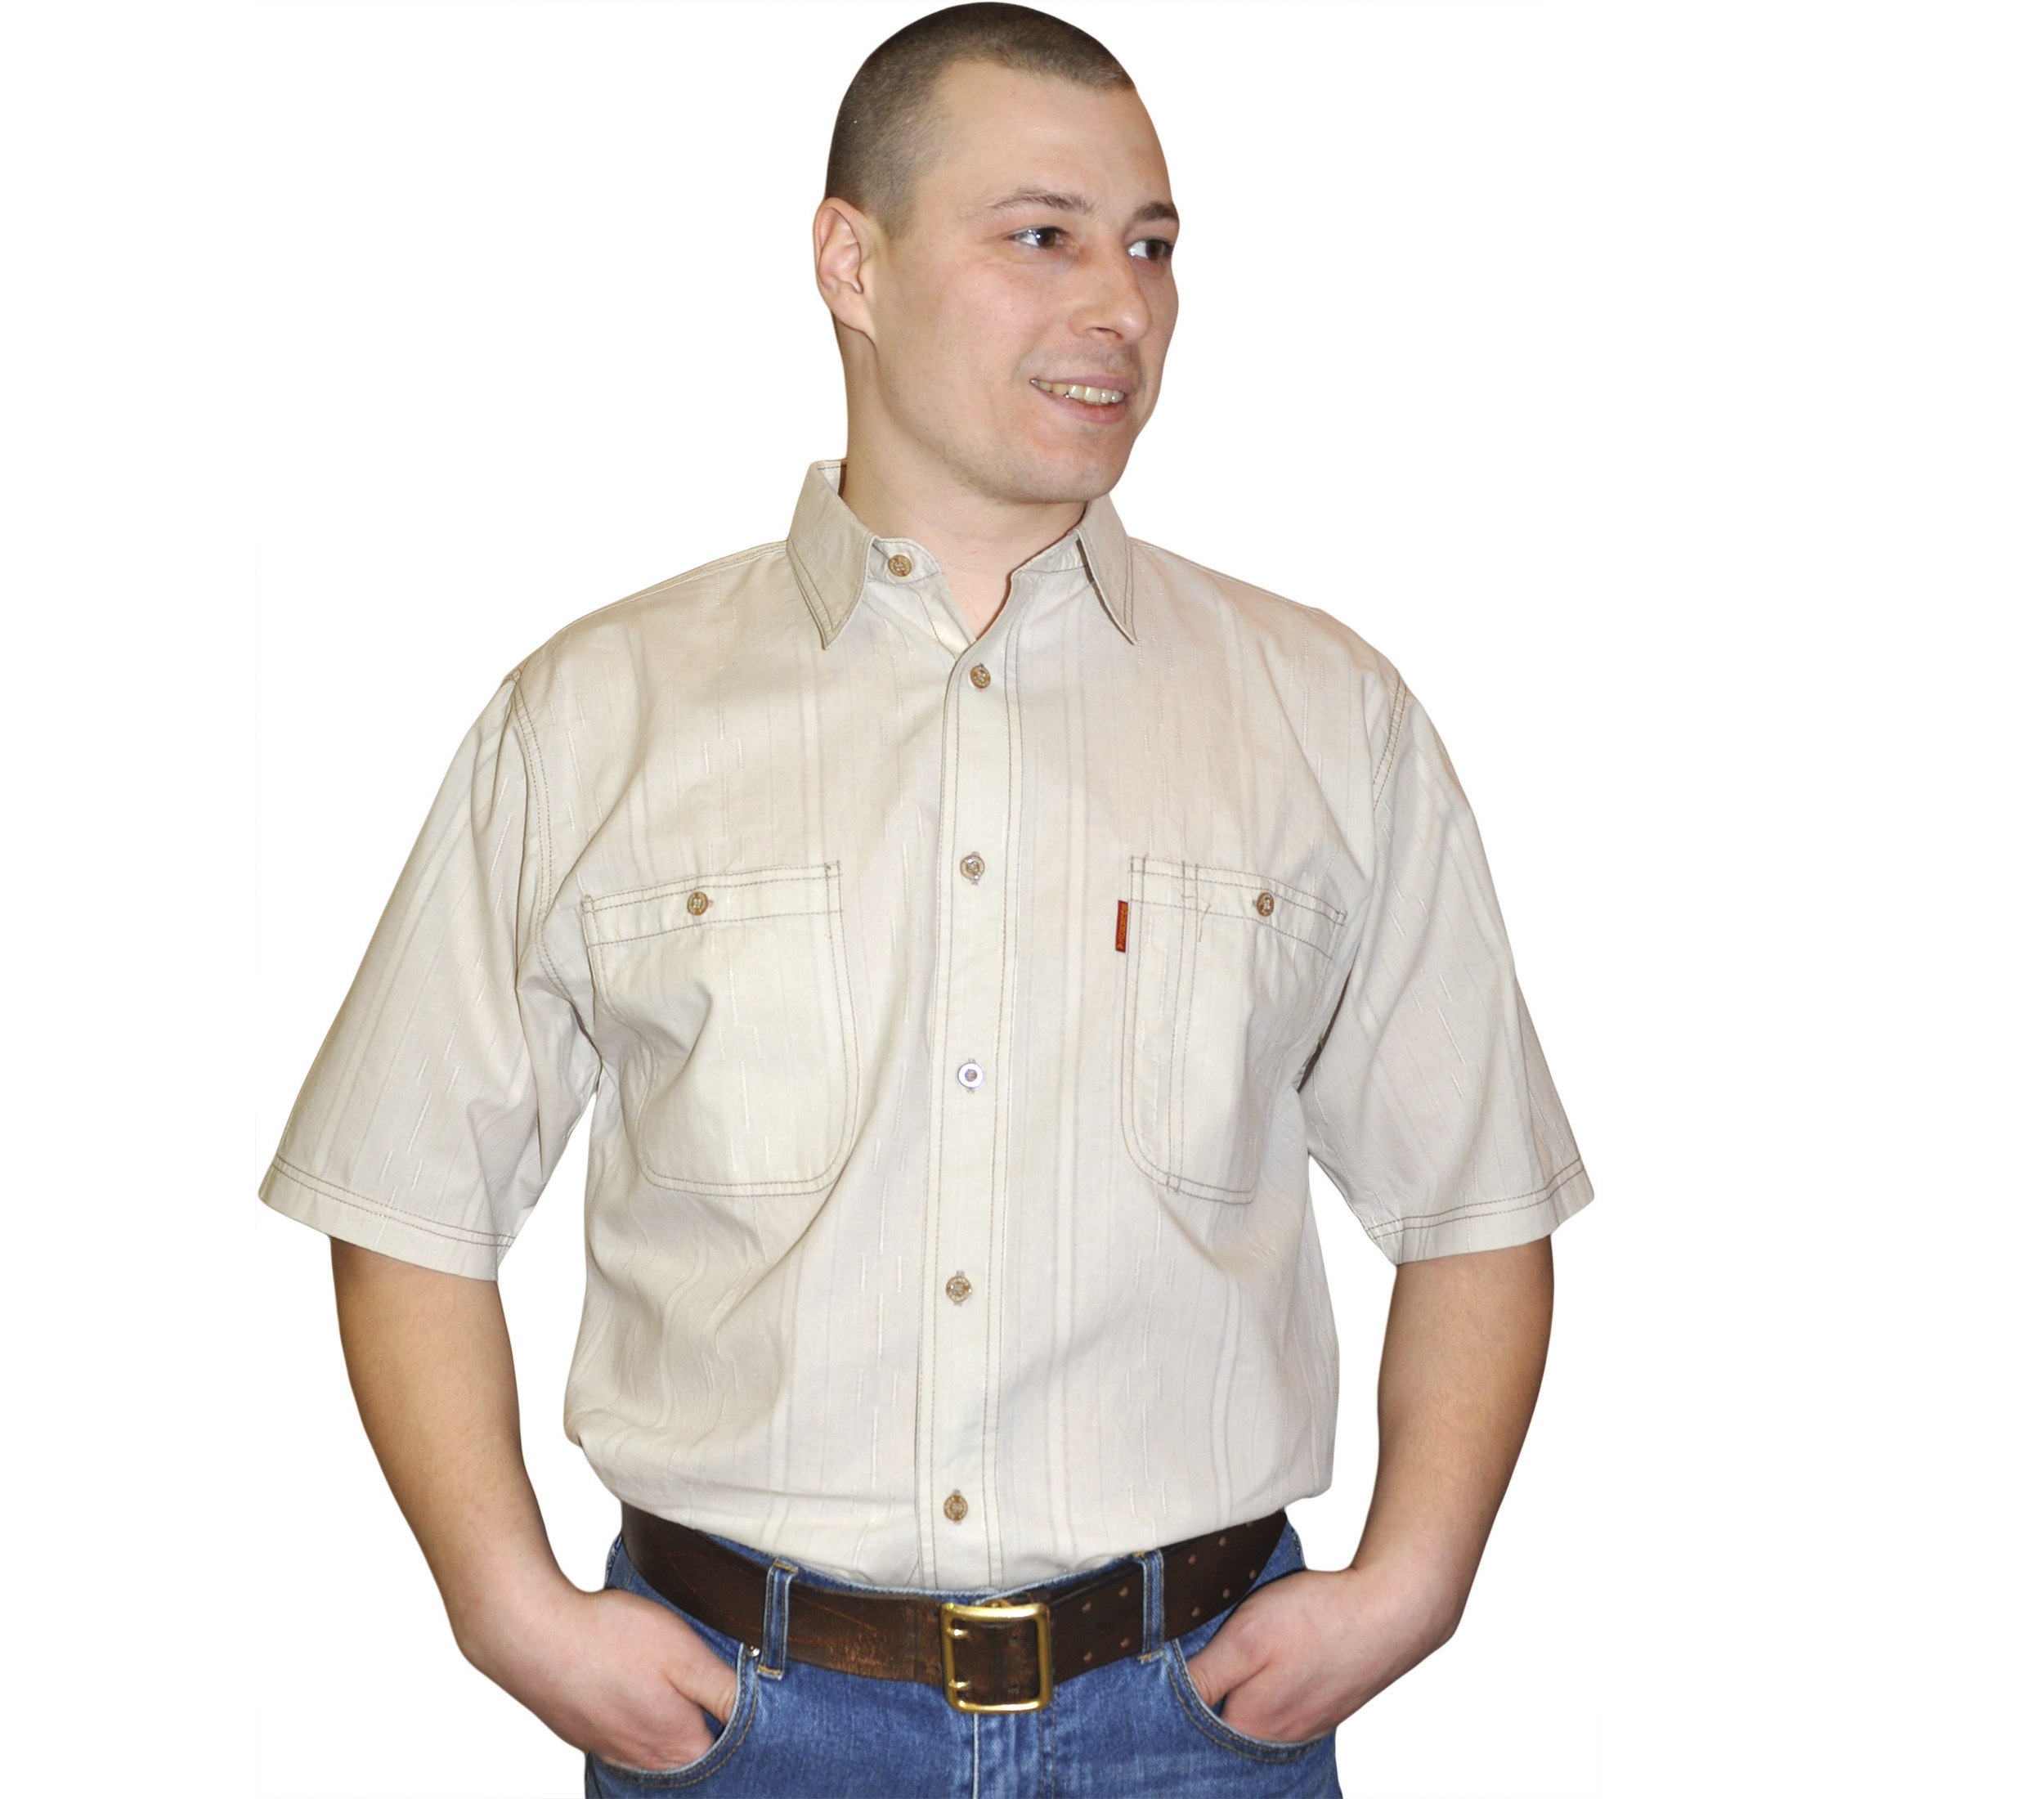 Мужская рубашка 52 размер. Рубашка мужская. Бежевая рубашка с коротким рукавом. Бежевая рубашка с коротким рукавом мужская. Полный мужчина в рубашке с коротким рукавом.